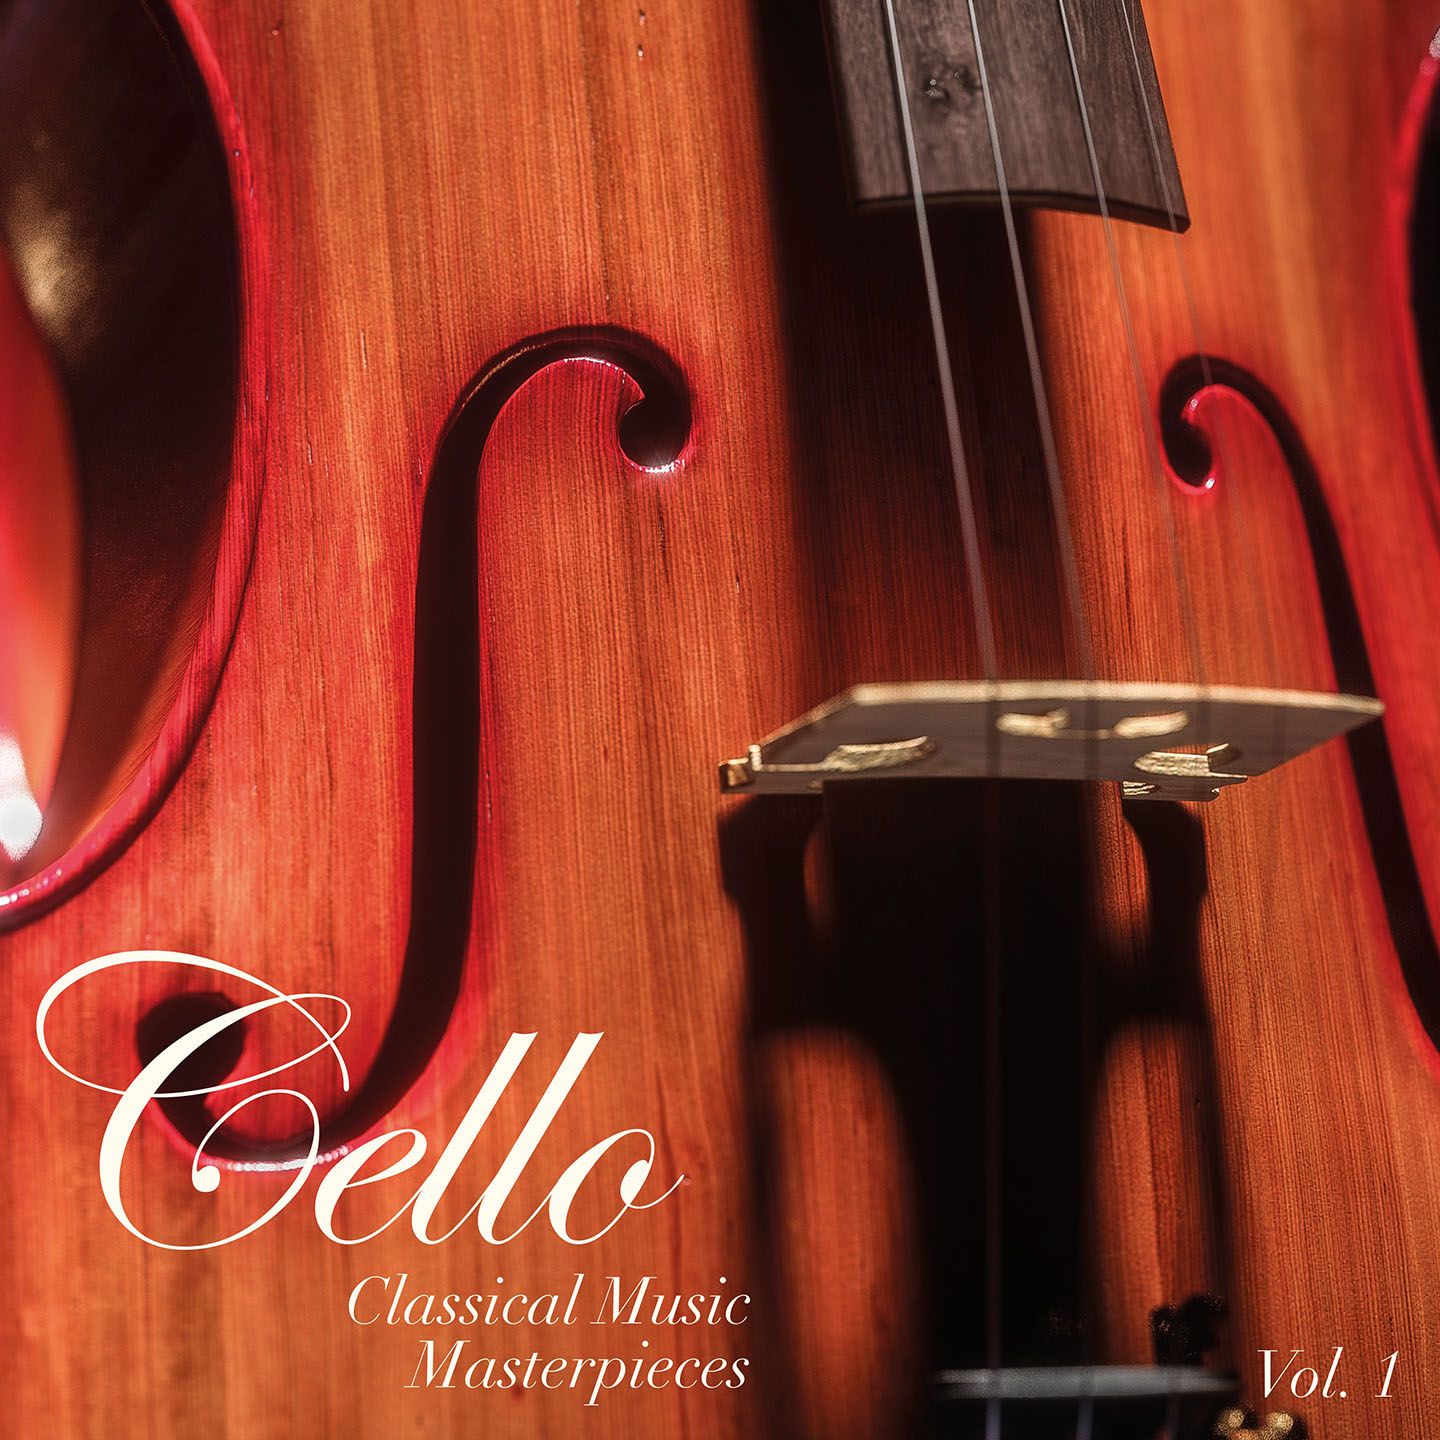 Cello - Classical Music